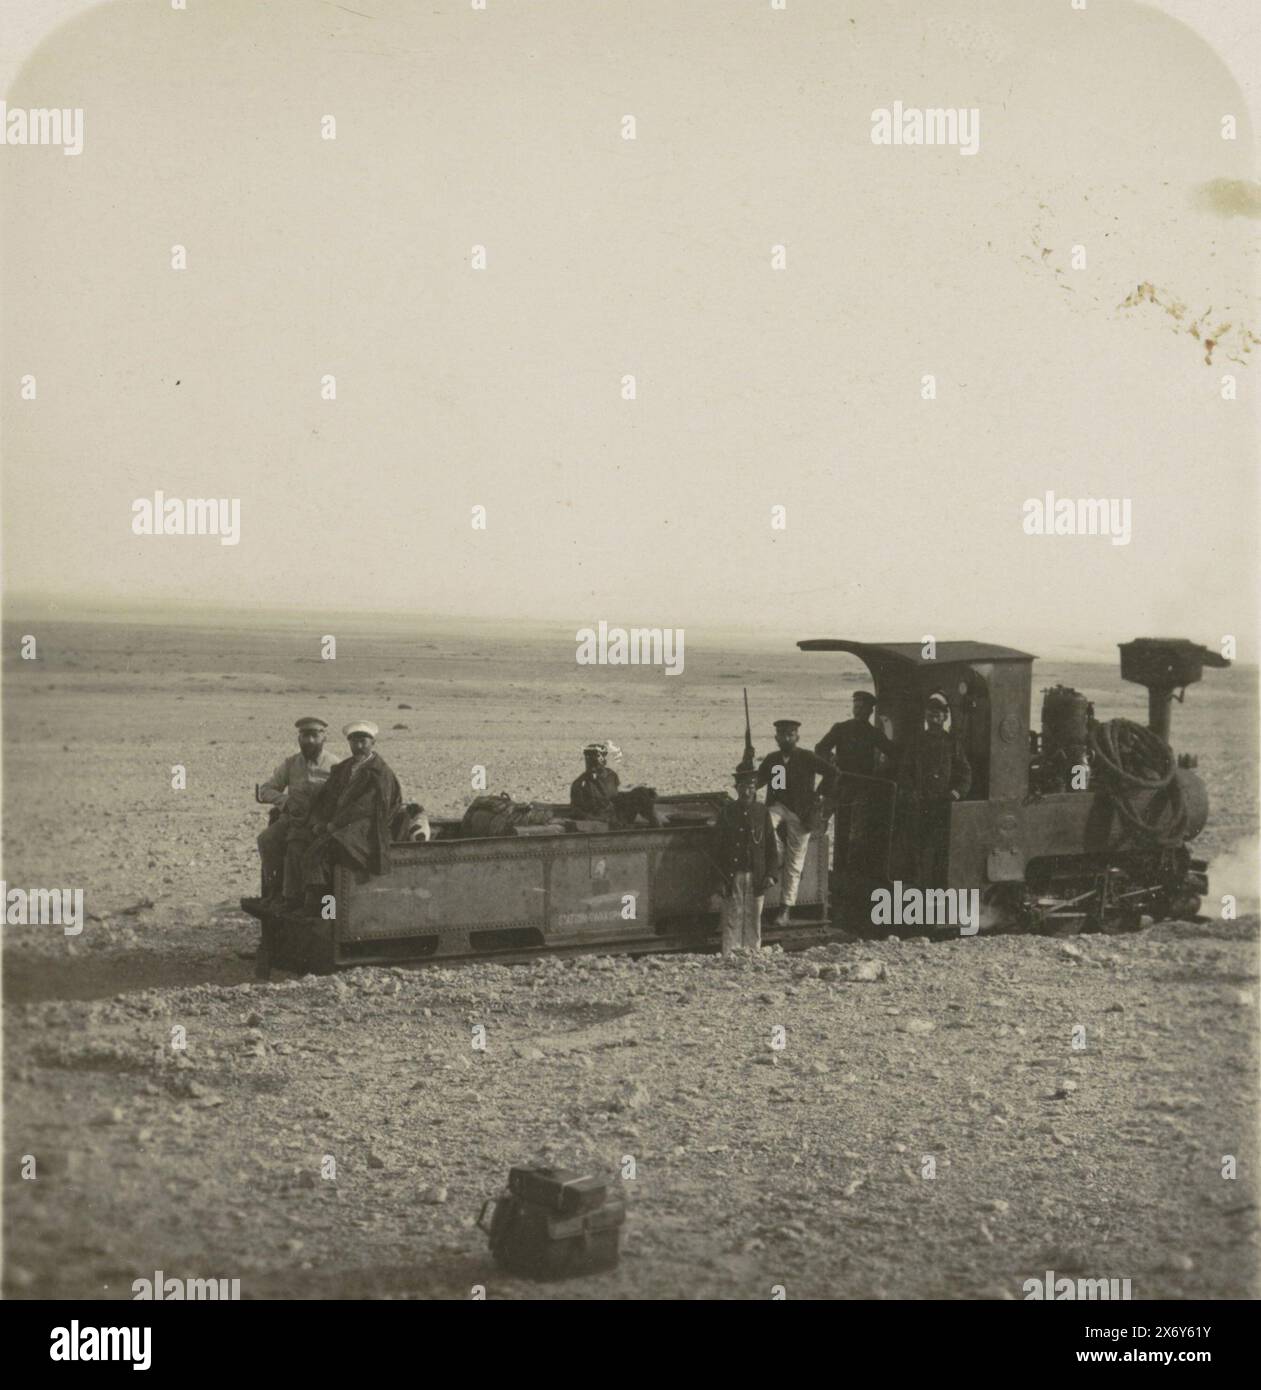 Locomotiva con persone nel deserto del Namib, Sud-Ovest dell'Africa. In basso a destra della foto a destra si legge: R.2775., stereografo, anonimo, sconosciuto, c. 1884 - c. 1914, carta, altezza, 89 mm x larghezza, 180 mm Foto Stock